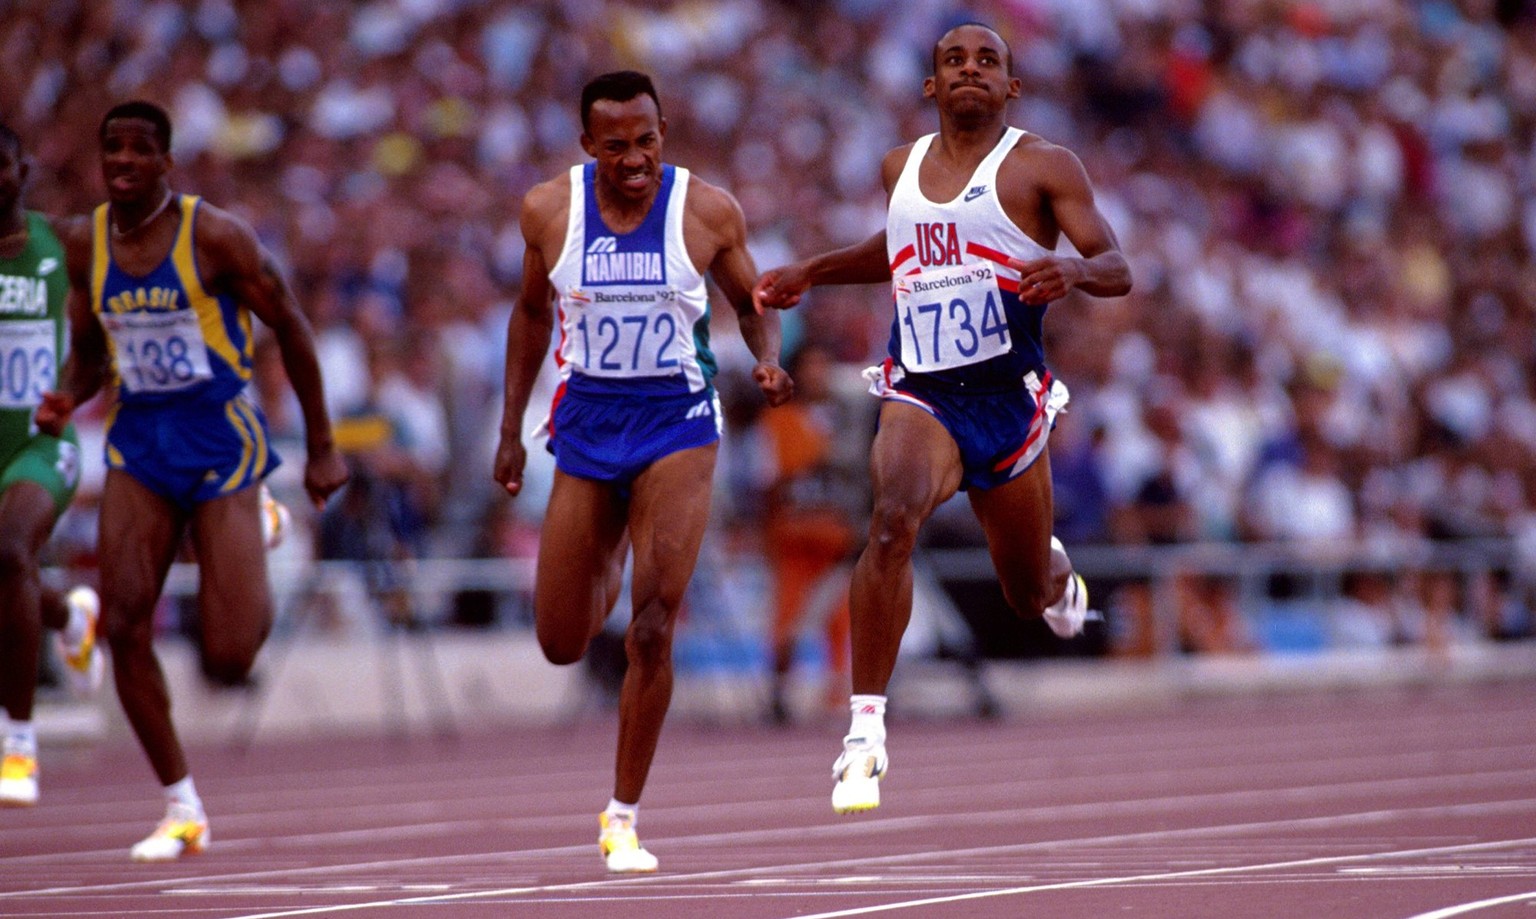 IMAGO / Norbert Schmidt

Olympiasieger Mike Marsh (re., USA) erreicht vor Frankie Fredericks (Namibia, 1272) das Ziel Leichtathletik OS Sommer Herren Olympische Sommerspiele 1992, Spiele, Olympia, Oly ...